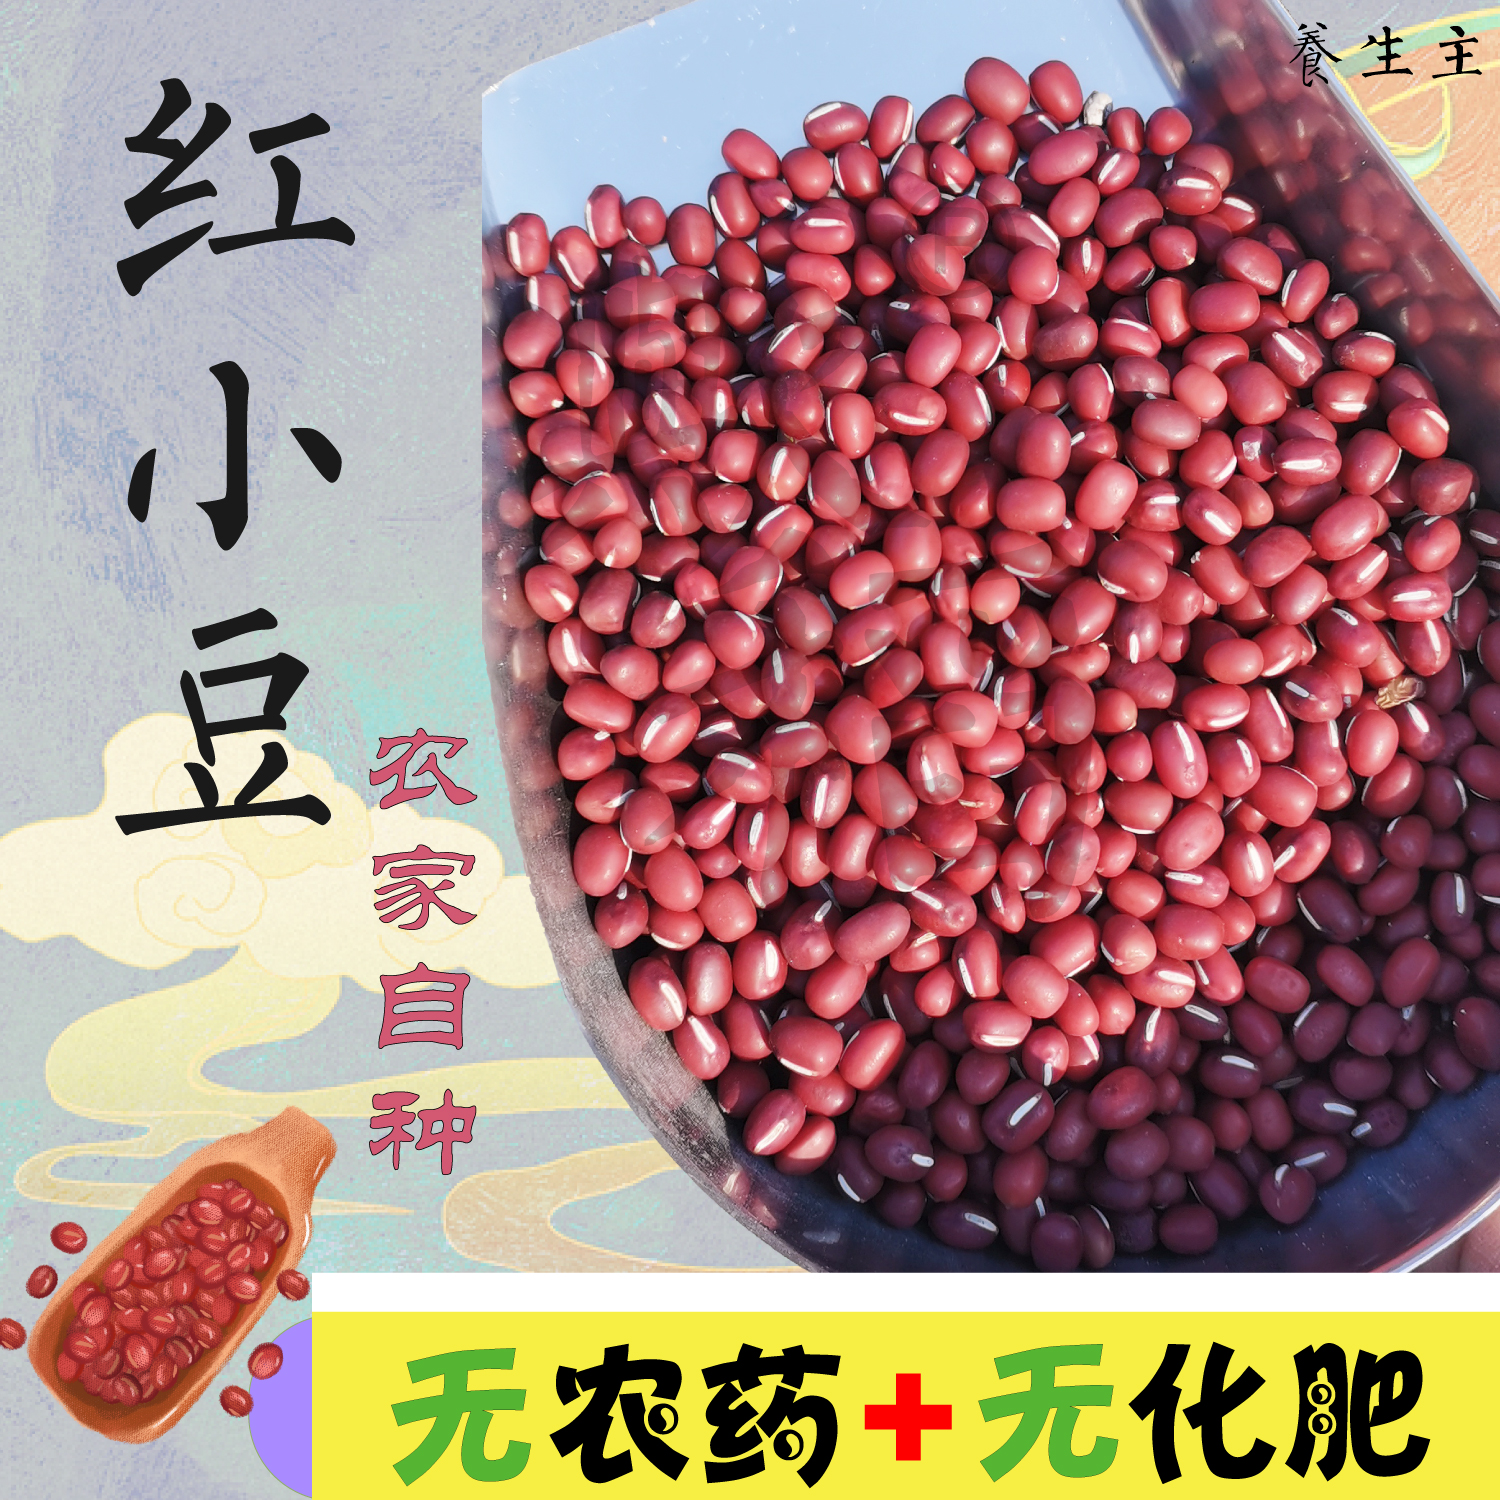 红小豆农家自产圆粒非赤豆有机肥非转基因黑龙江天然杂粮豆子五谷